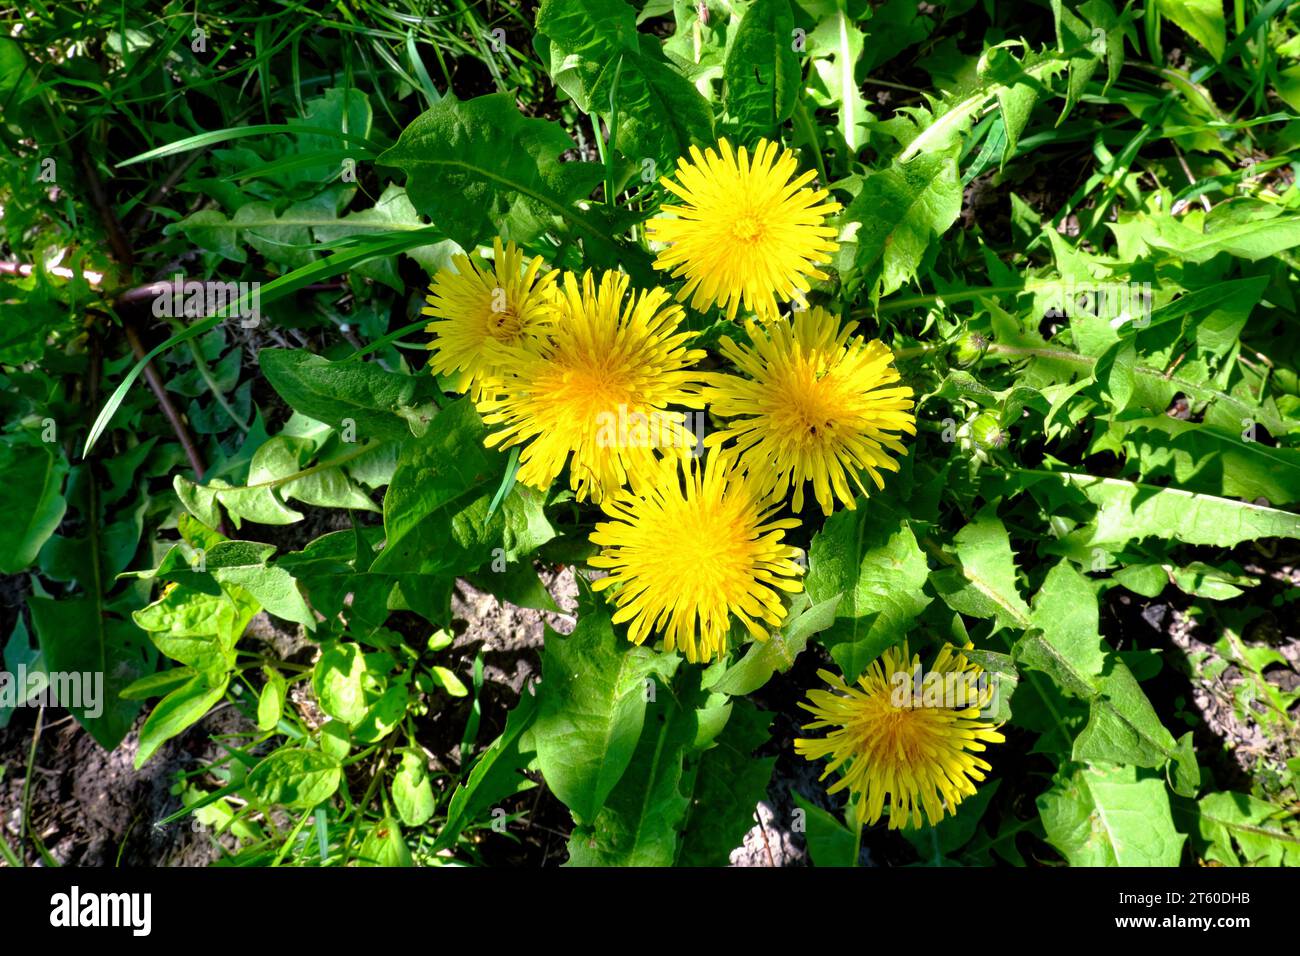 Eine lebendige Szene entfaltet sich, während ein Löwenzahnhaufen auf einem grünen Feld liegt, deren leuchtend gelbe Blütenblätter die Wärme und das Glück des Frühlings ausstrahlen, eines Clo Stockfoto